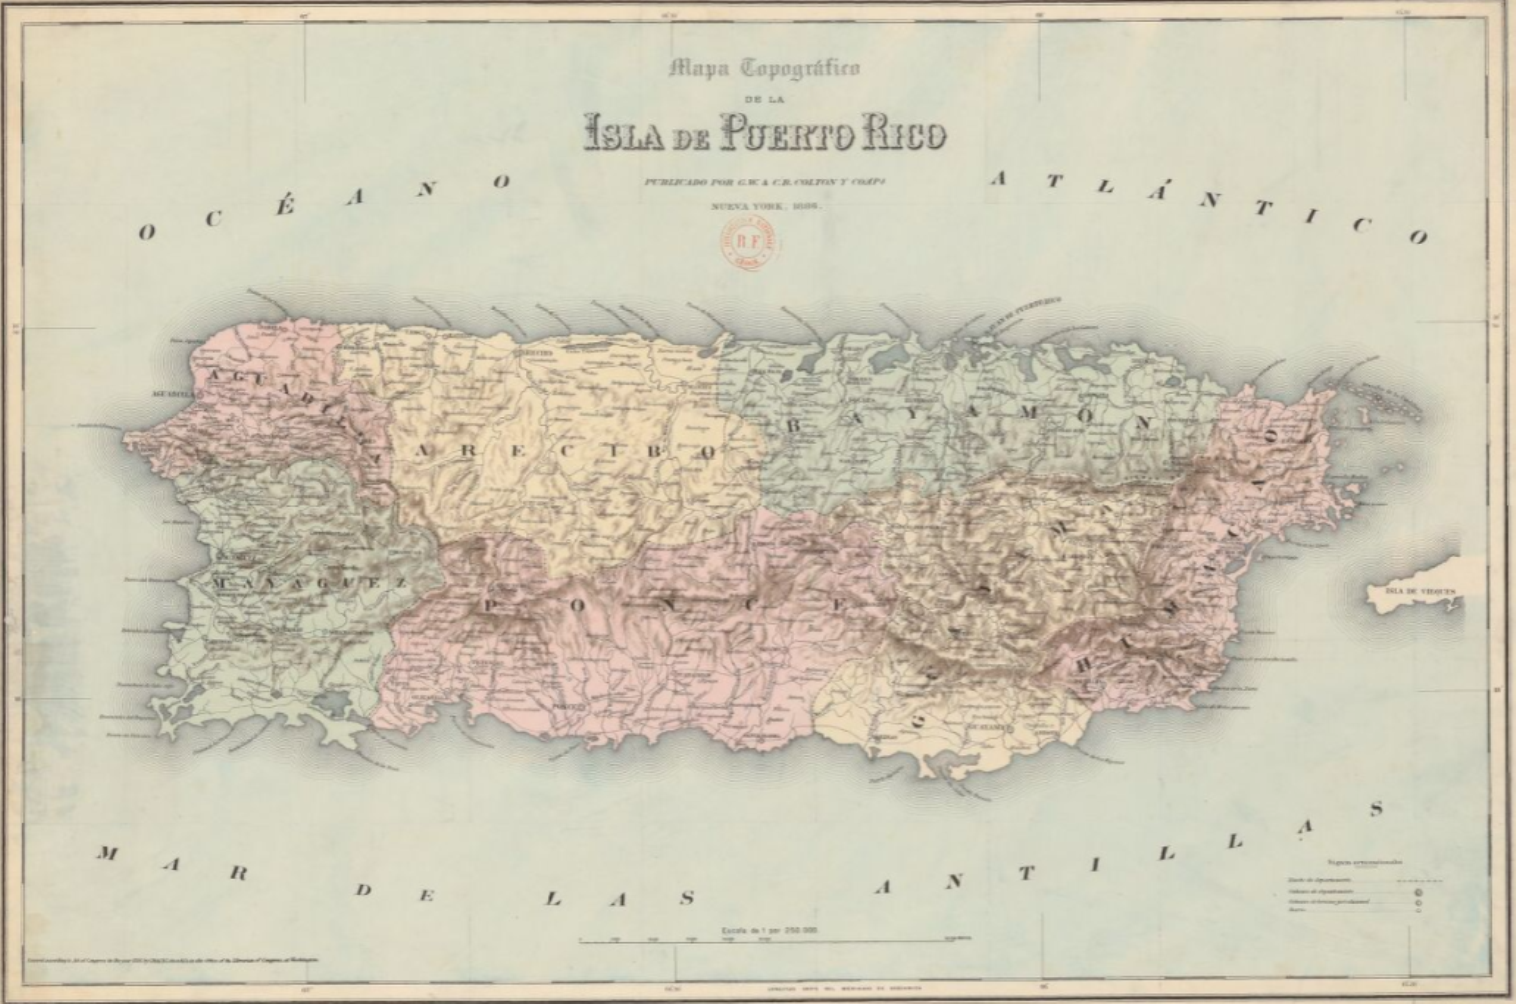 Bonós Llensa, el naviero que fundó una ciudad "catalana" en Puerto Rico